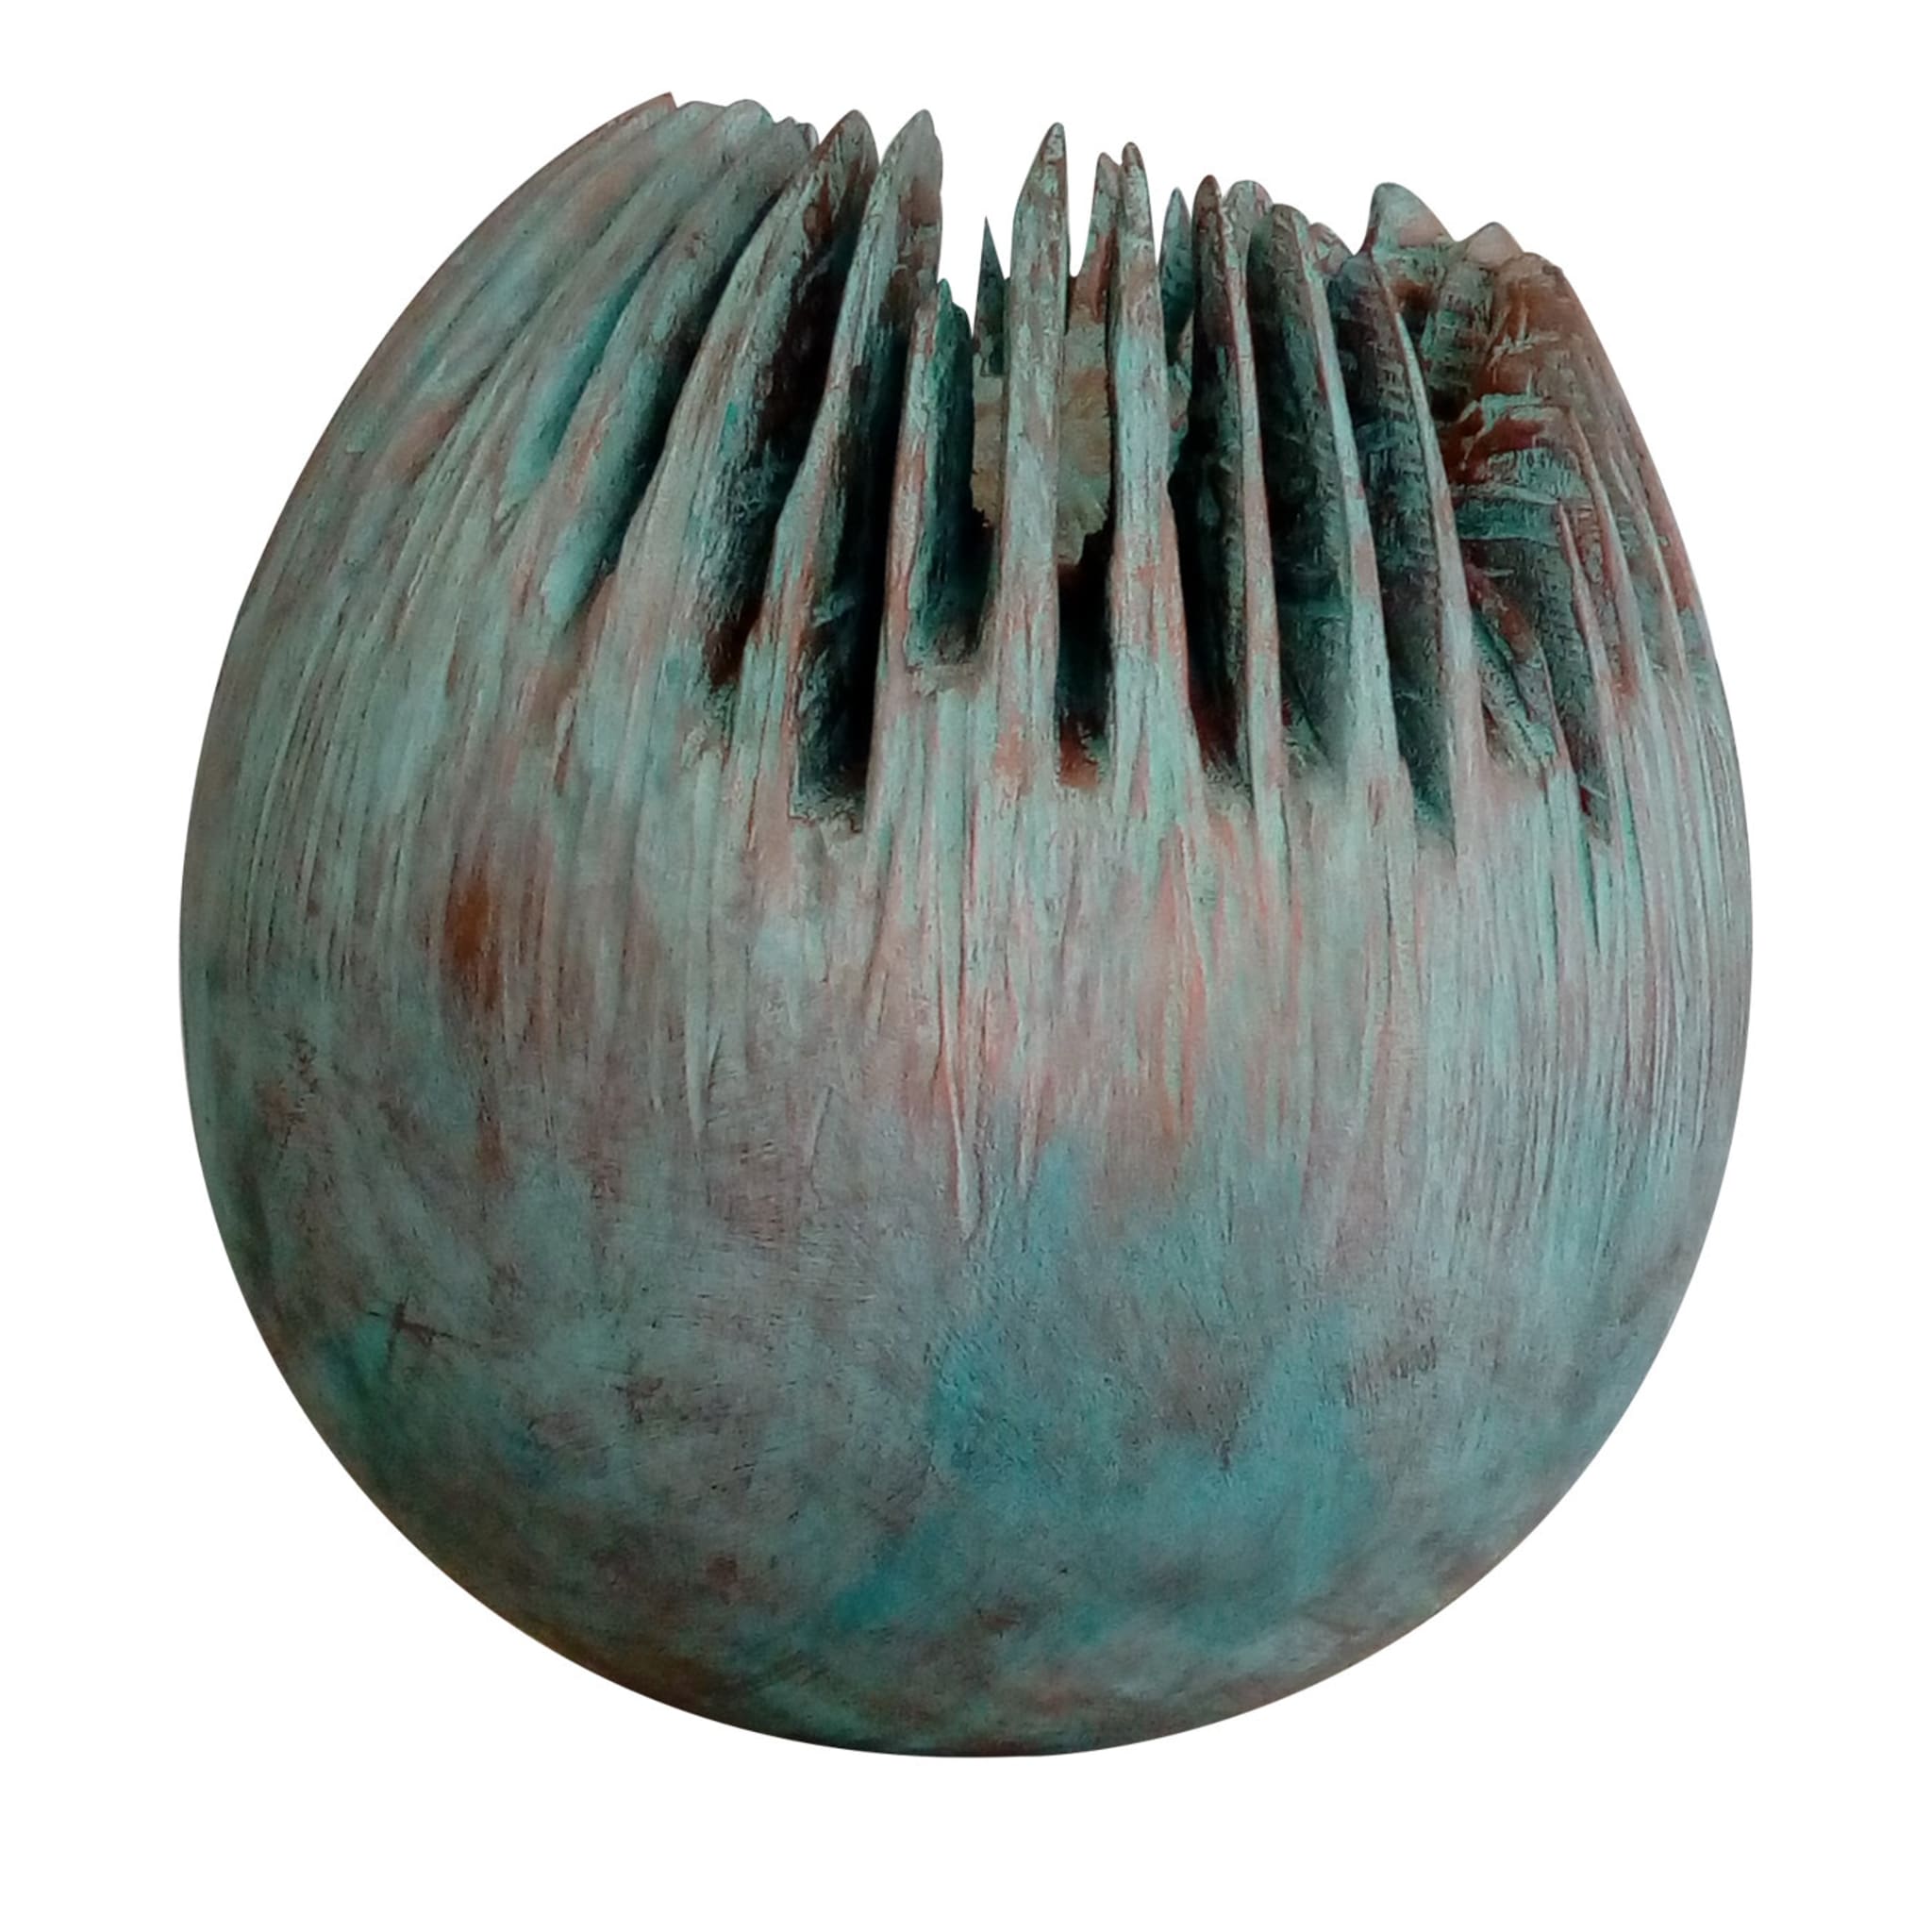 Escultura de un huevo alienígena - Vista principal